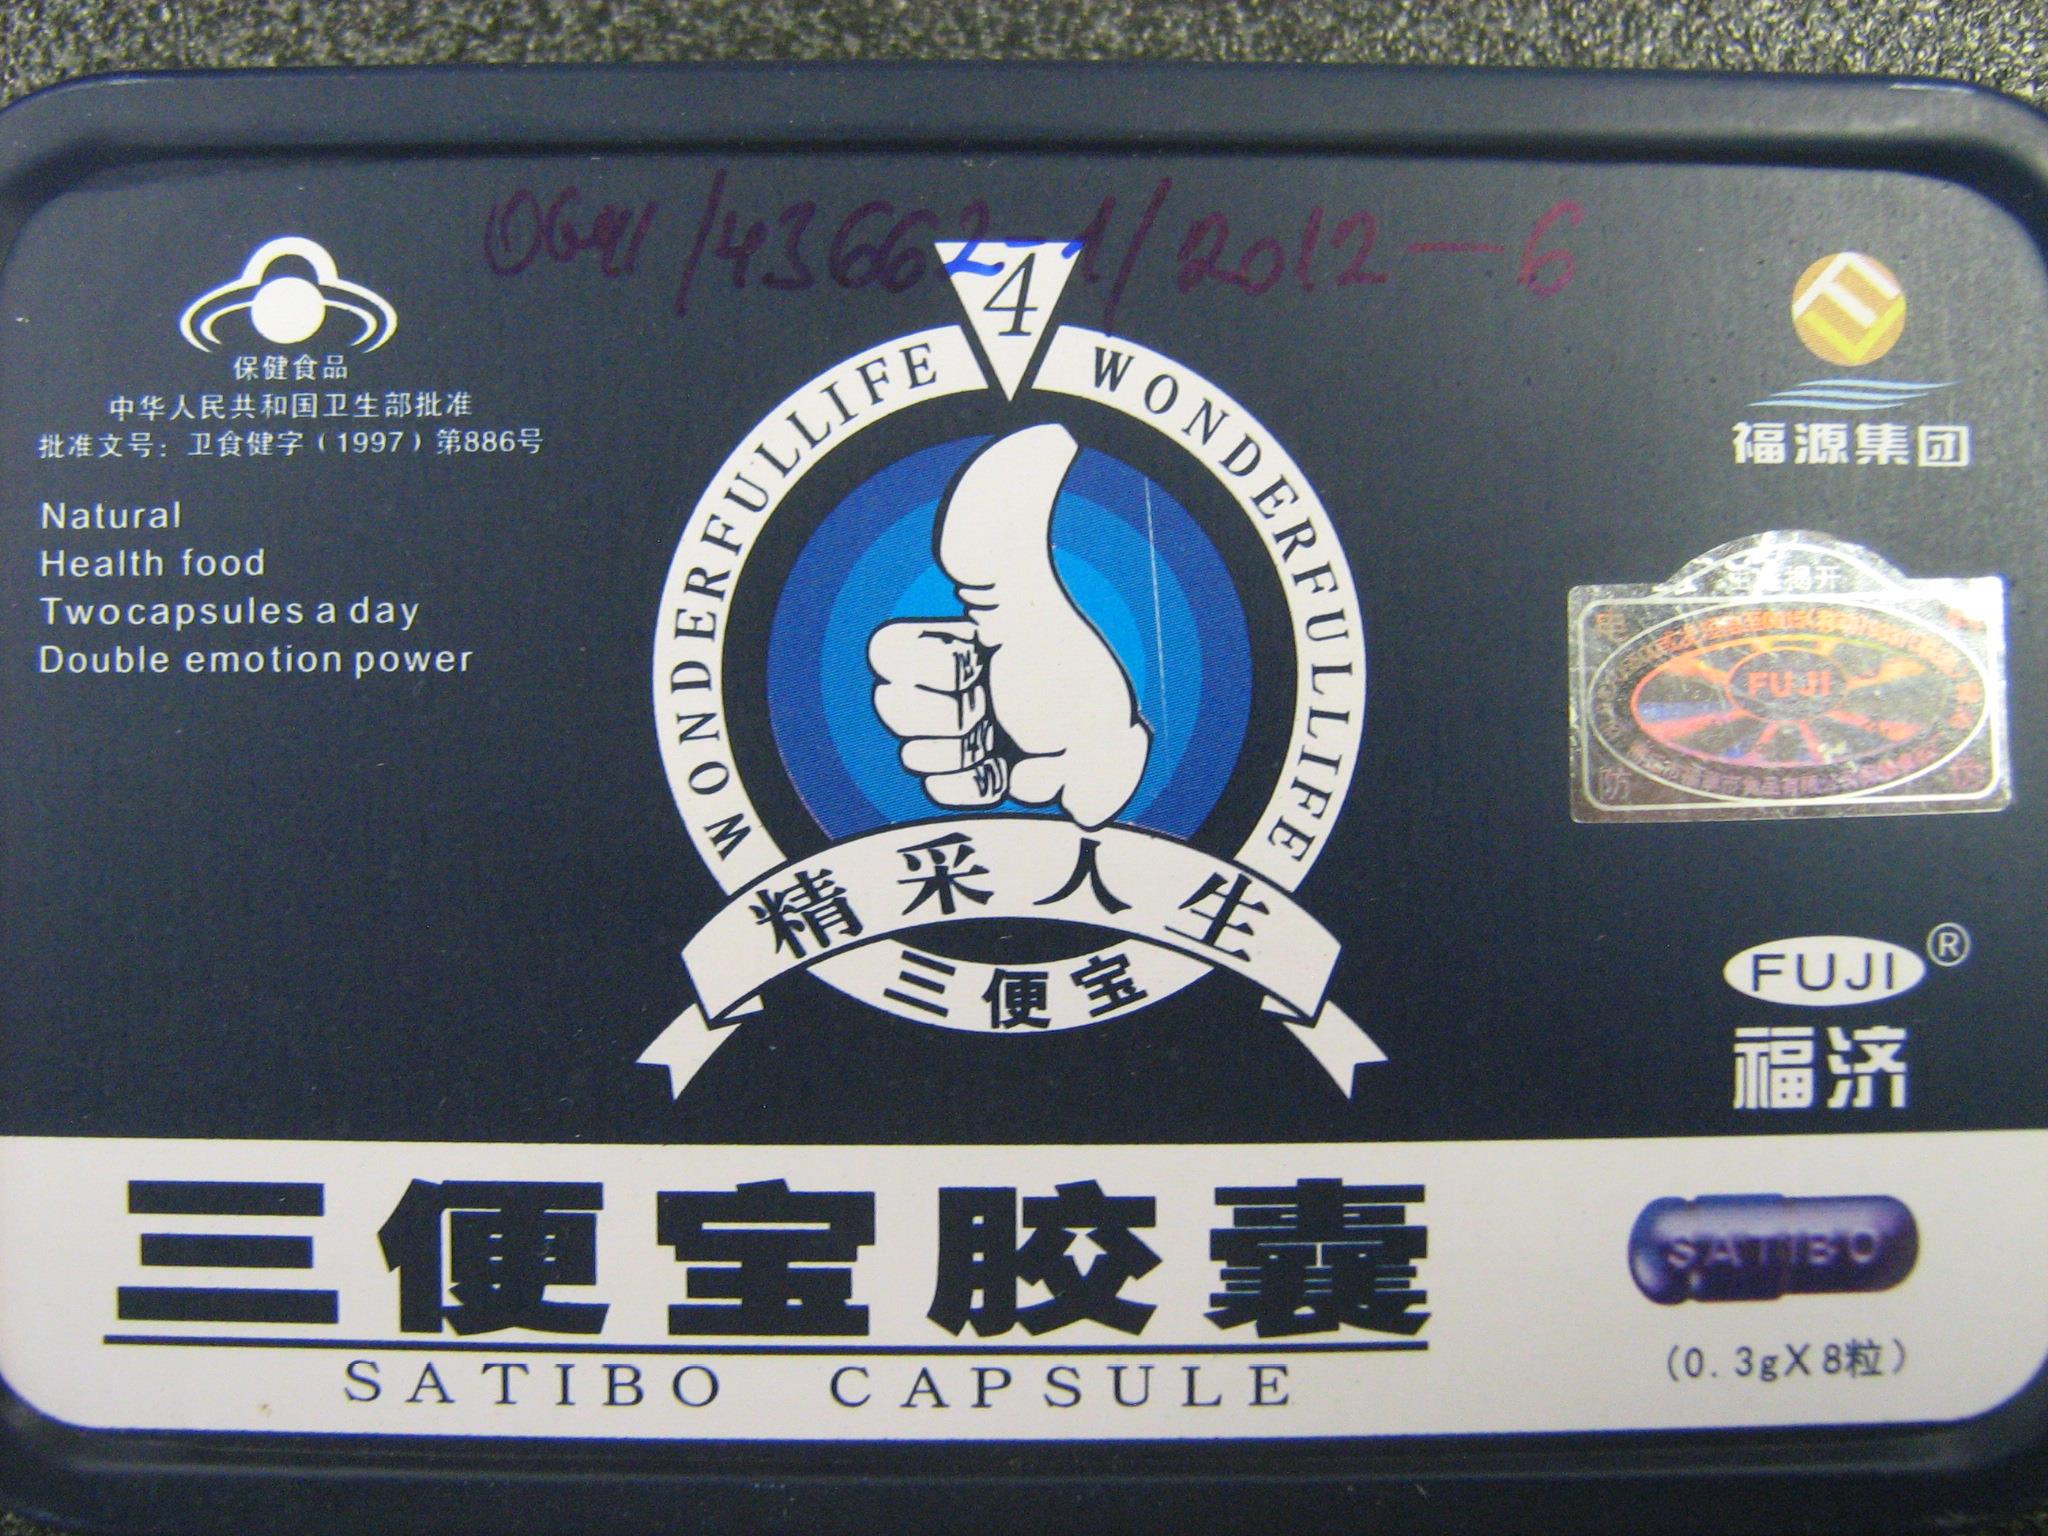 Billede af det ulovlige produkt: Satibo 